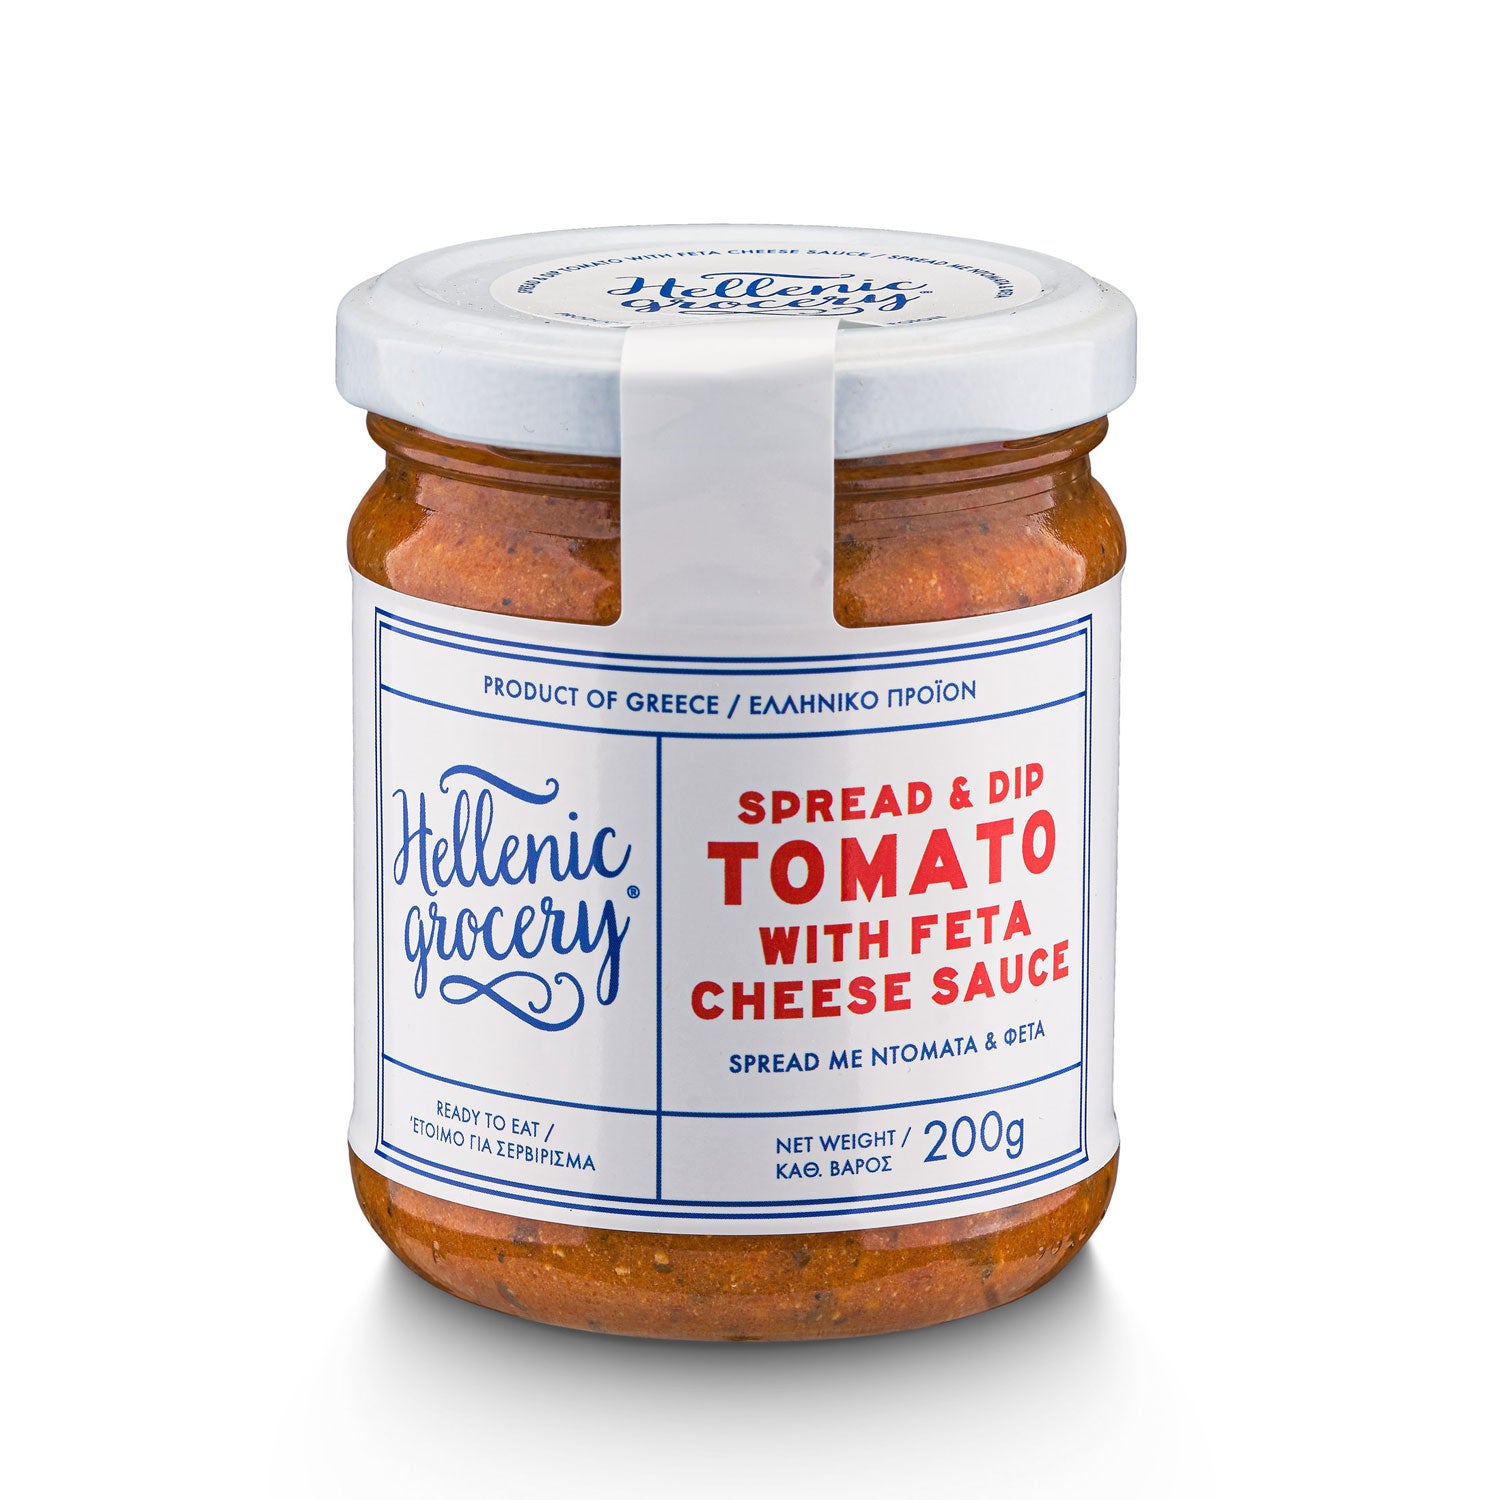 Épicerie-grecque-Produits-grecs-tartinade-de-tomates-au fromage-feta-200g-hellenic-grocery